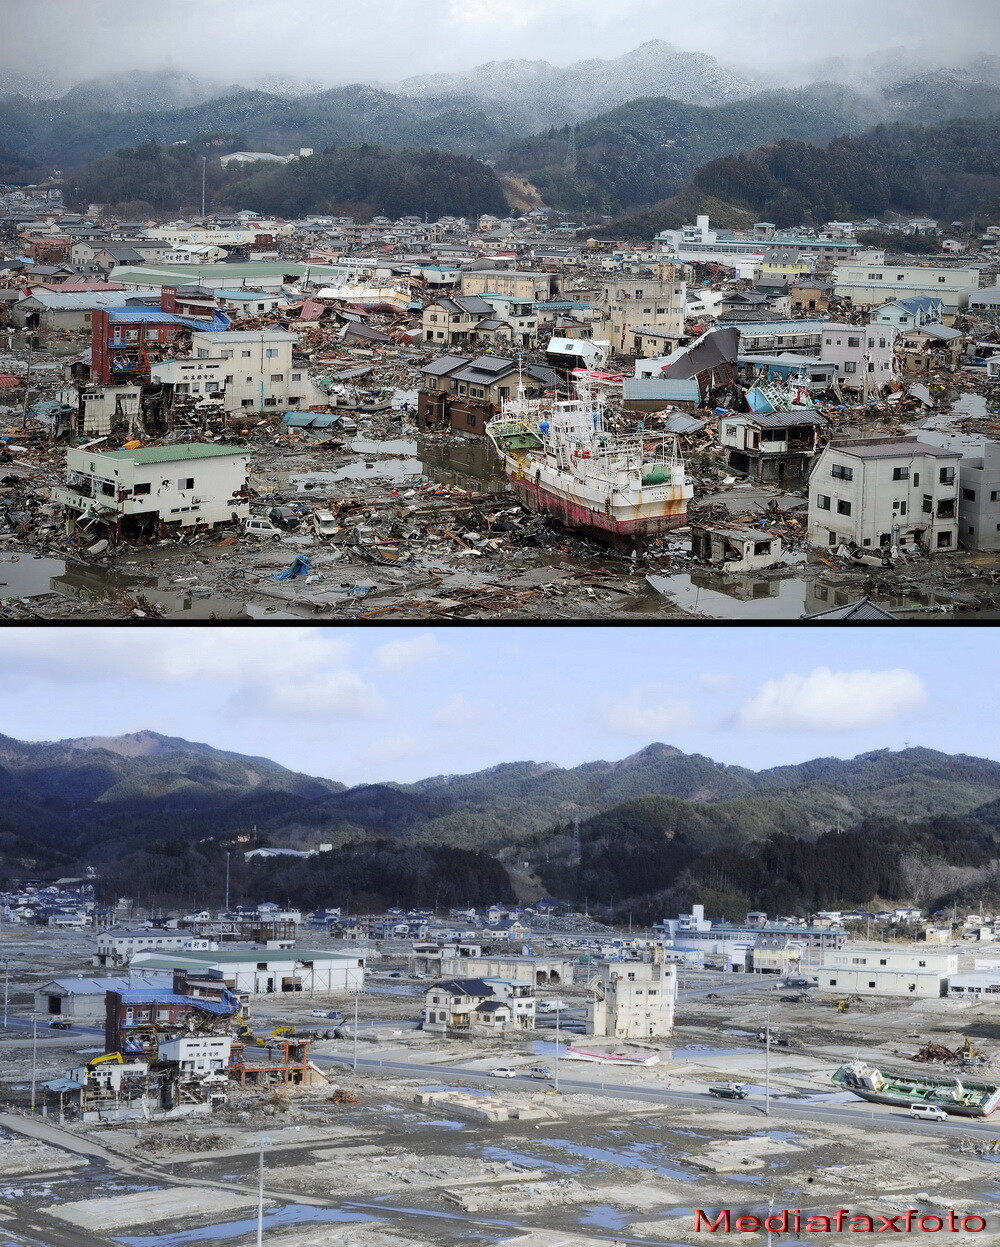 Barca de pe casa, imaginea simbol a Japoniei dupa tsunami. Cum arata acest loc astazi - Imaginea 10